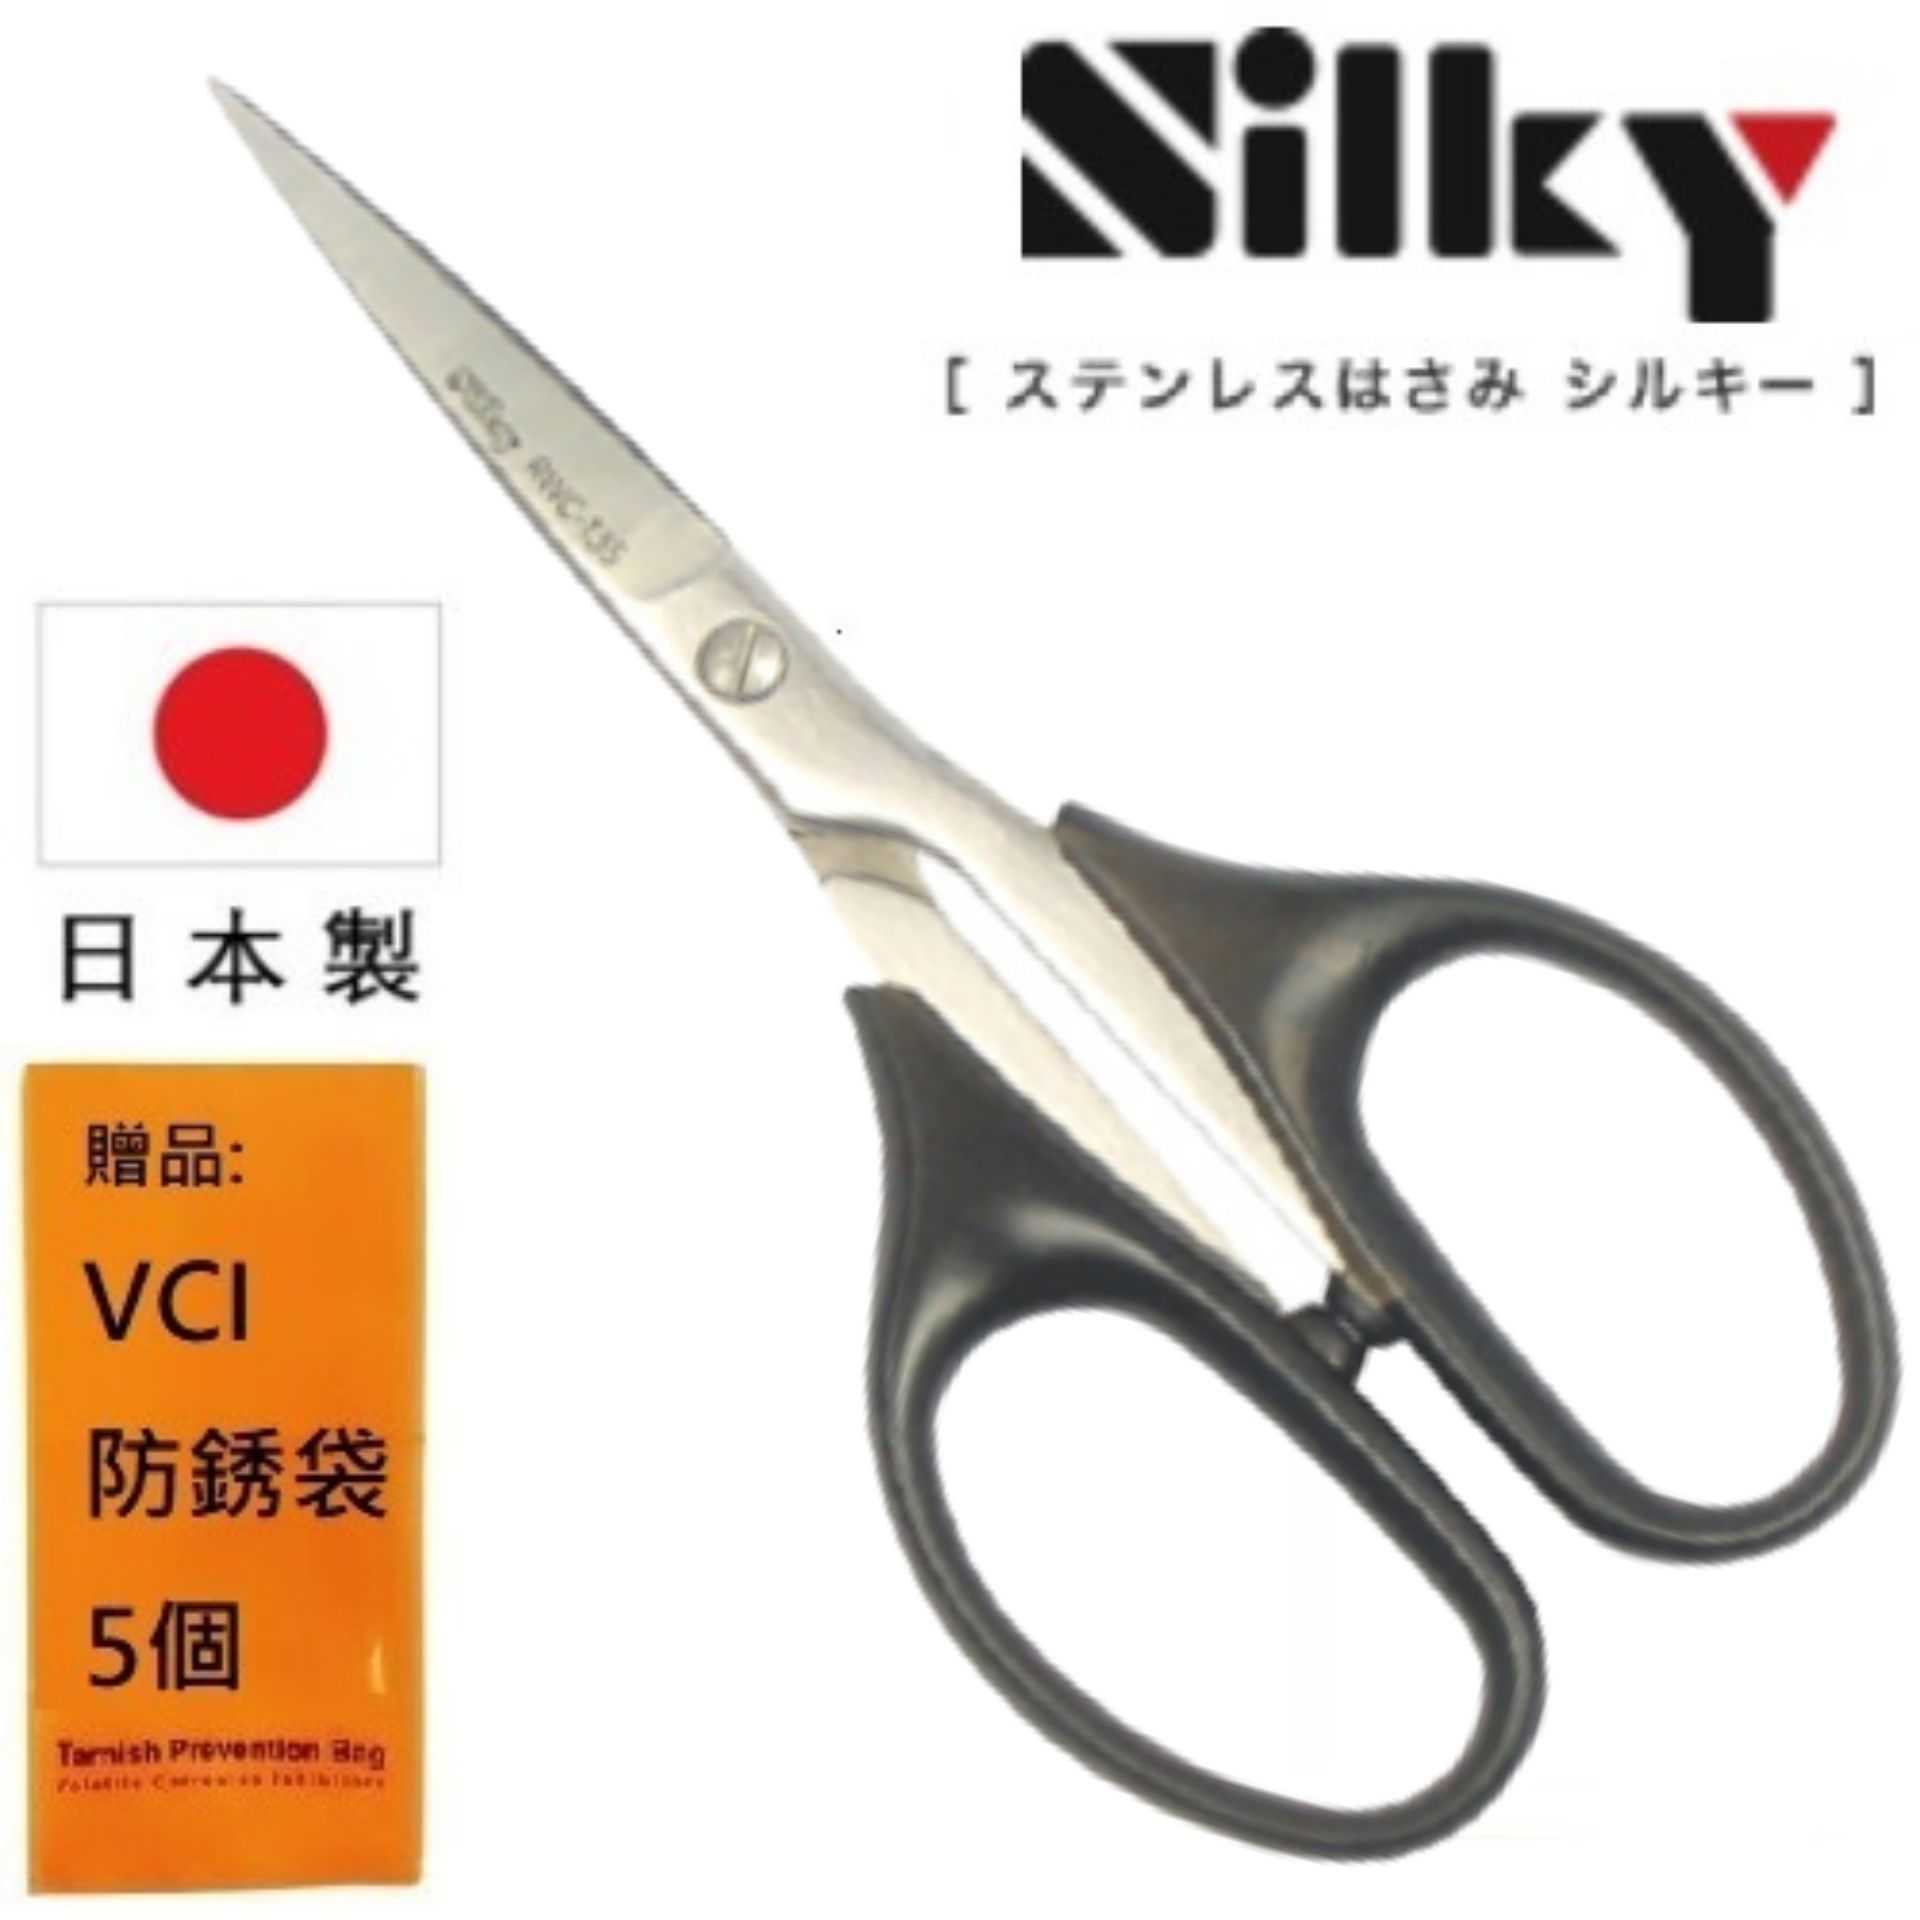 【日本SILKY】手工藝剪刀-135mm刃物鋼材質 品質保證  銳利、好剪